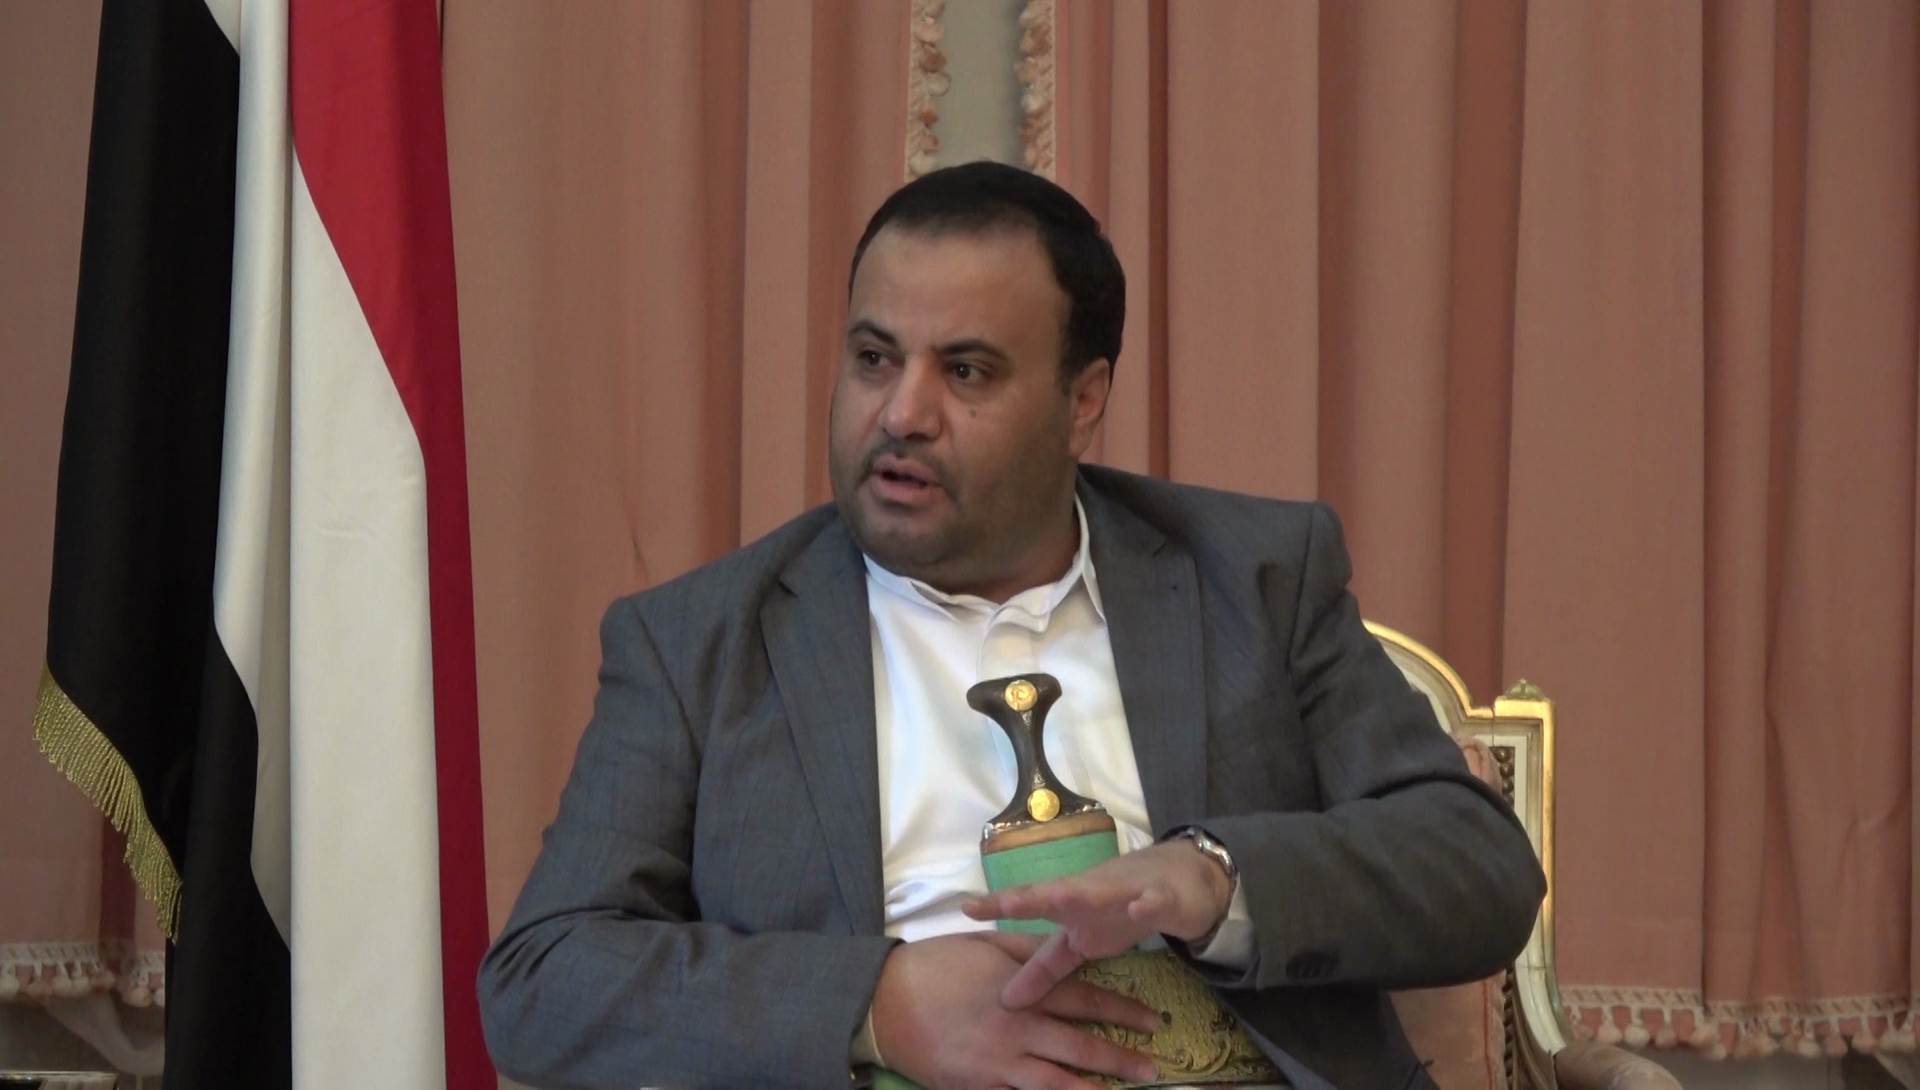 الصماد يحذر من تورط الولايات المتحدة بشكل مباشر في اليمن ويكشف عن محاولات فاشلة لشراء الذمم وتشكيل طابور خامس